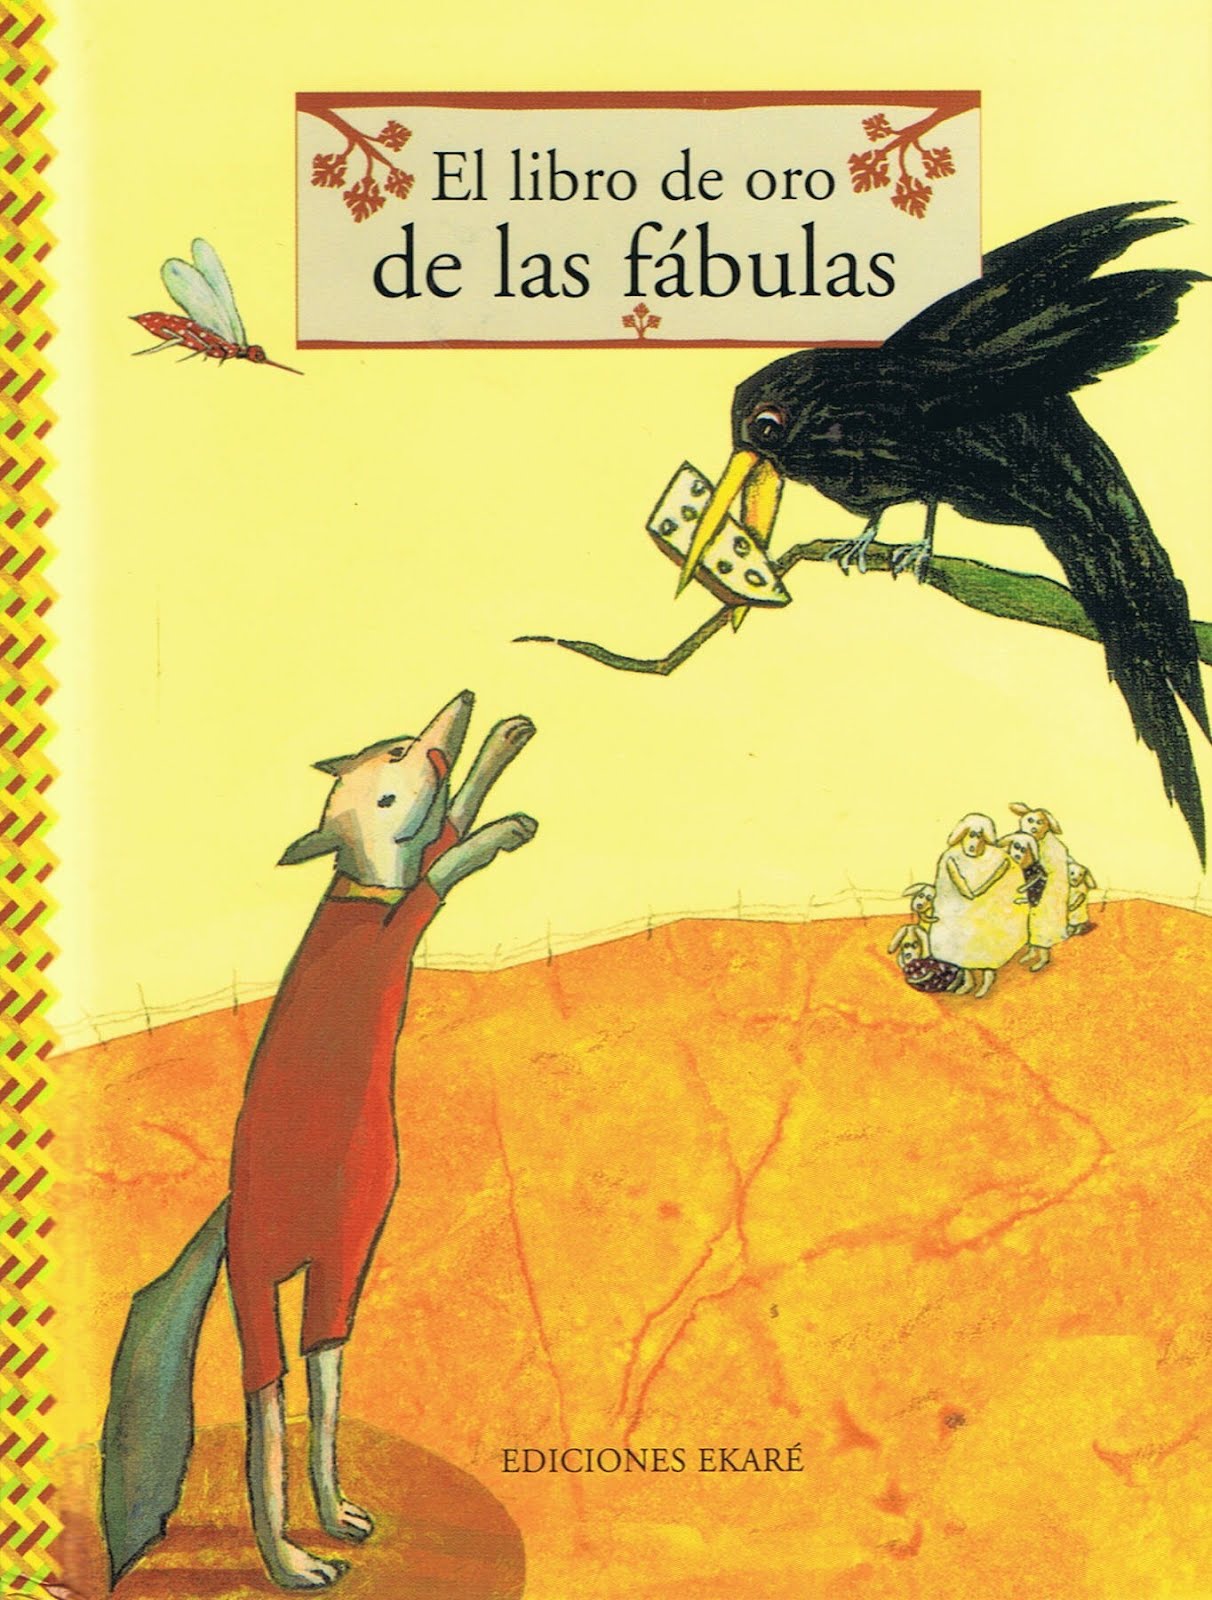 Mi primer libro para colorear: 100 imágenes fáciles y divertidas de objetos  cotidianos y animales para colorear para niños a partir de 1 año. (Spanish